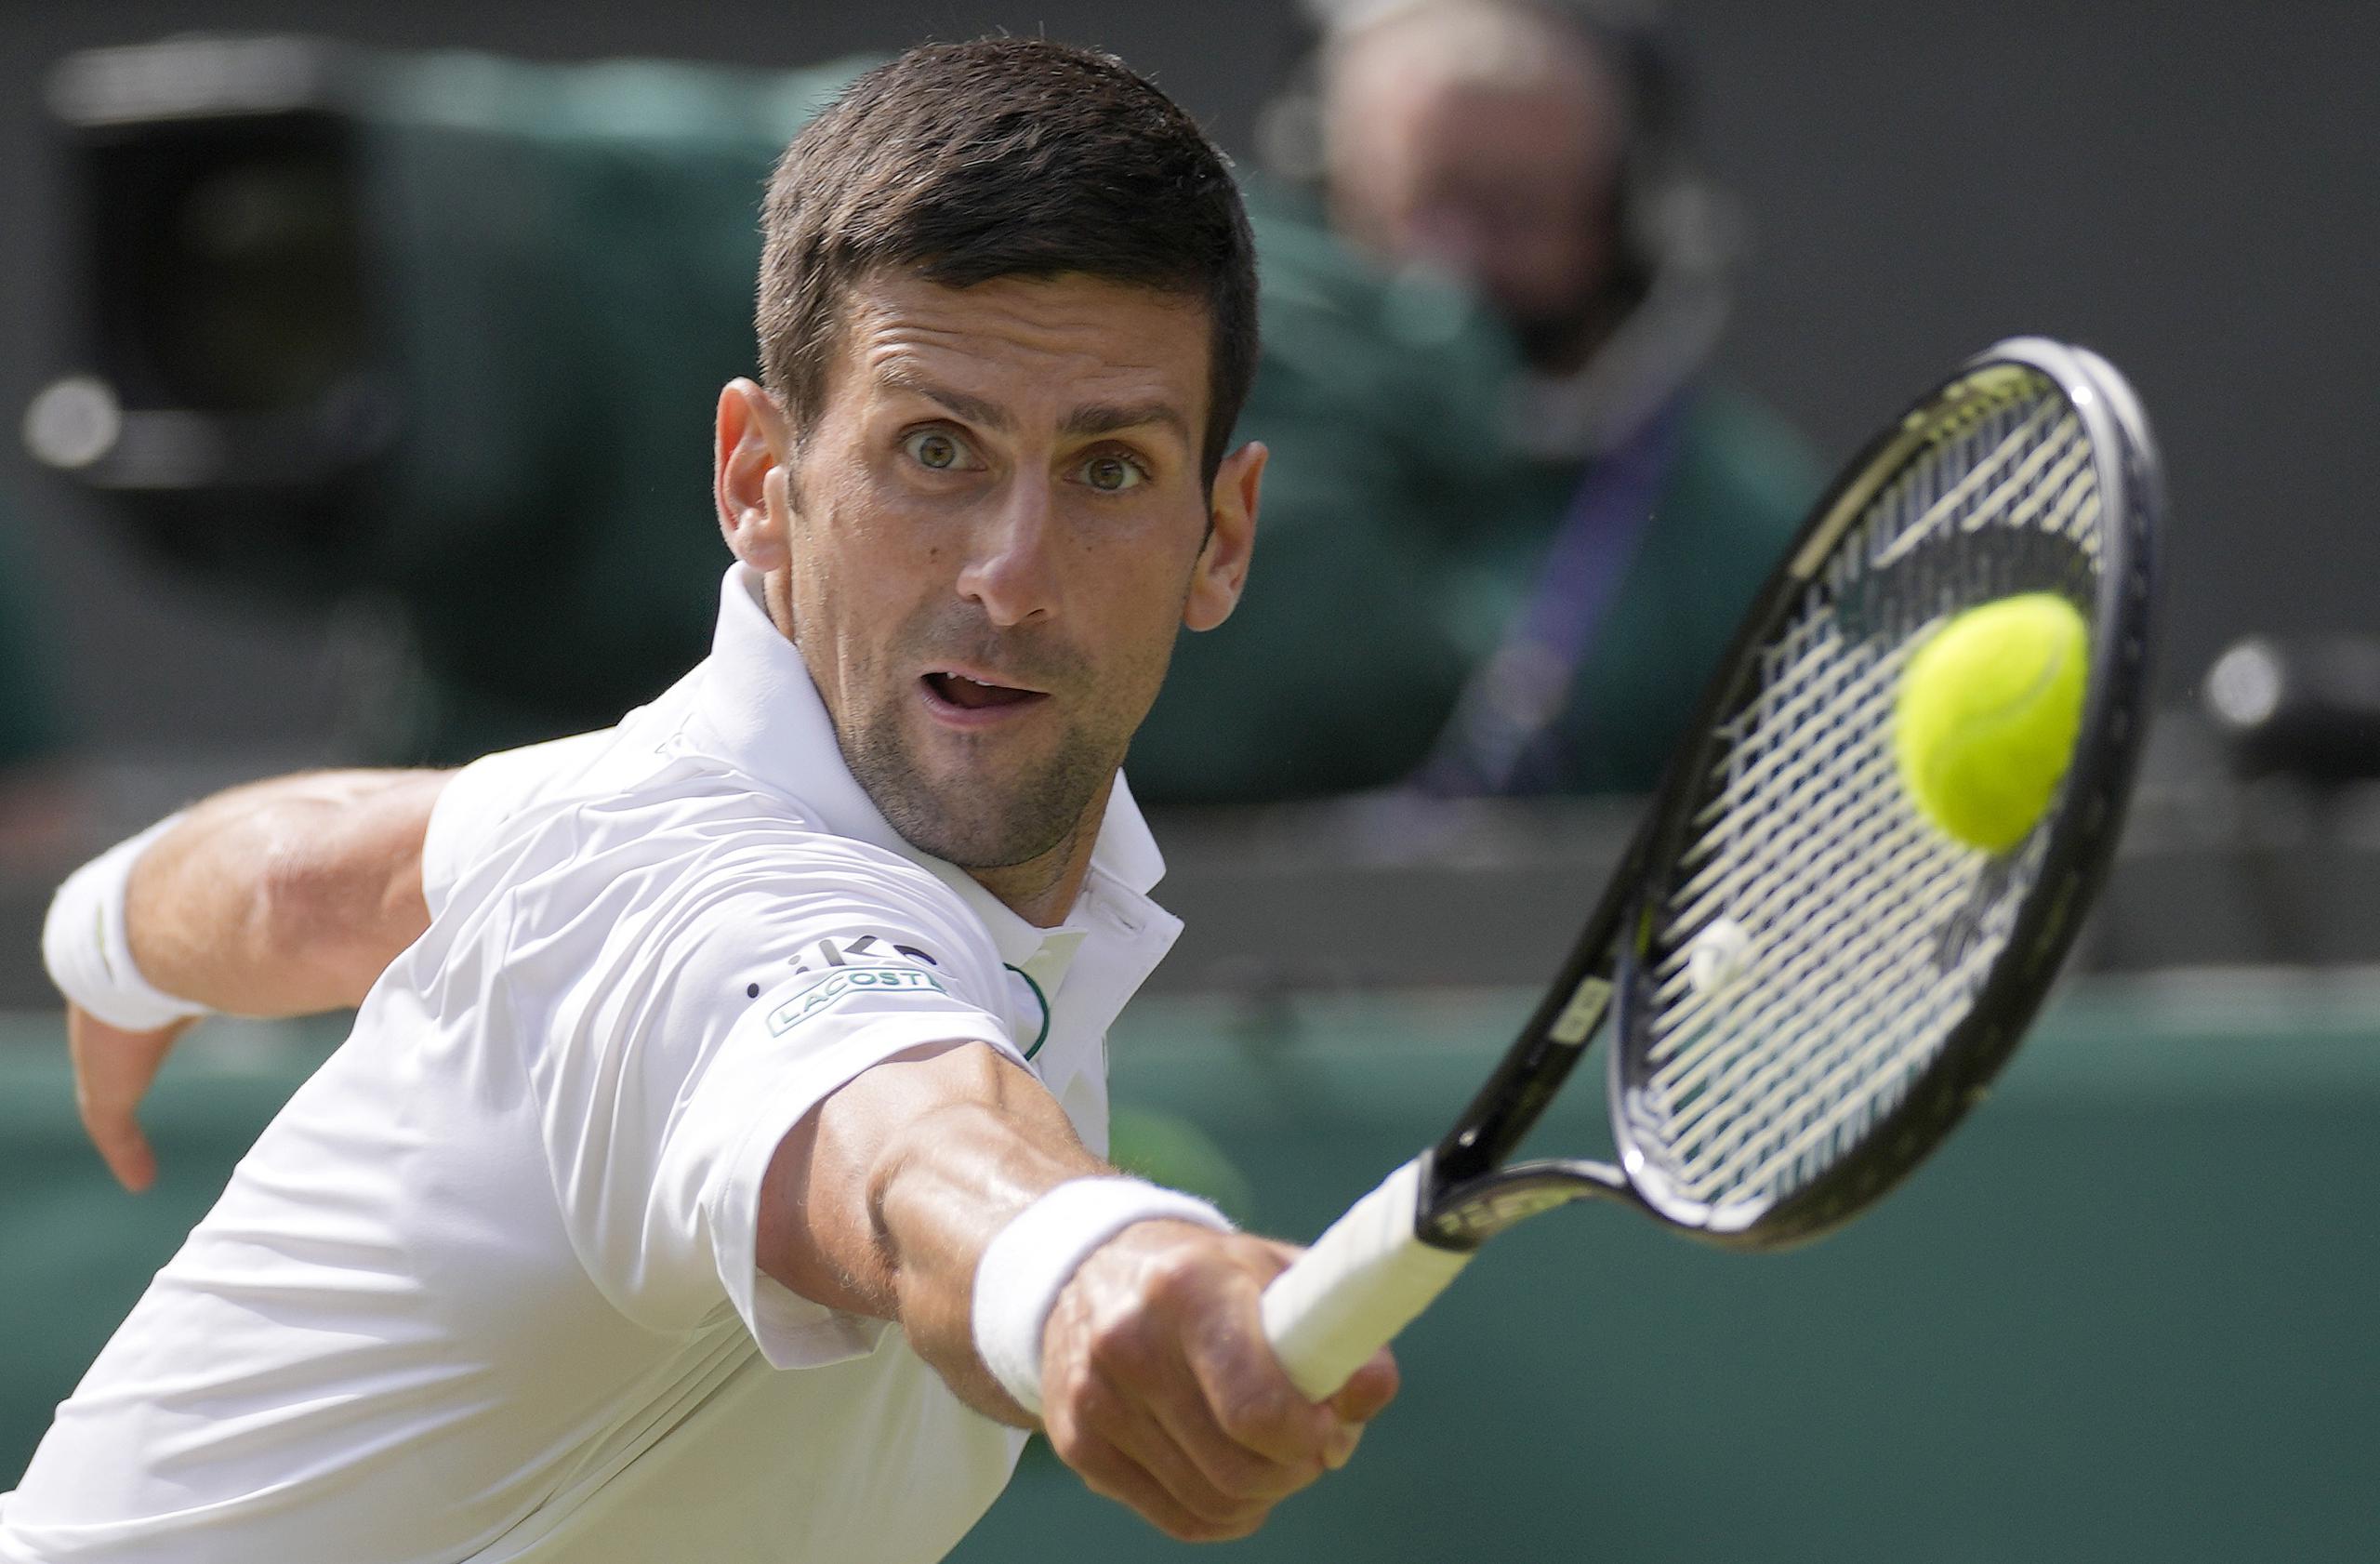 Las miradas estará centradas en Novak Djokovic, quien intentará ganar los cuatro torneos grandes en el mismo año calendario.